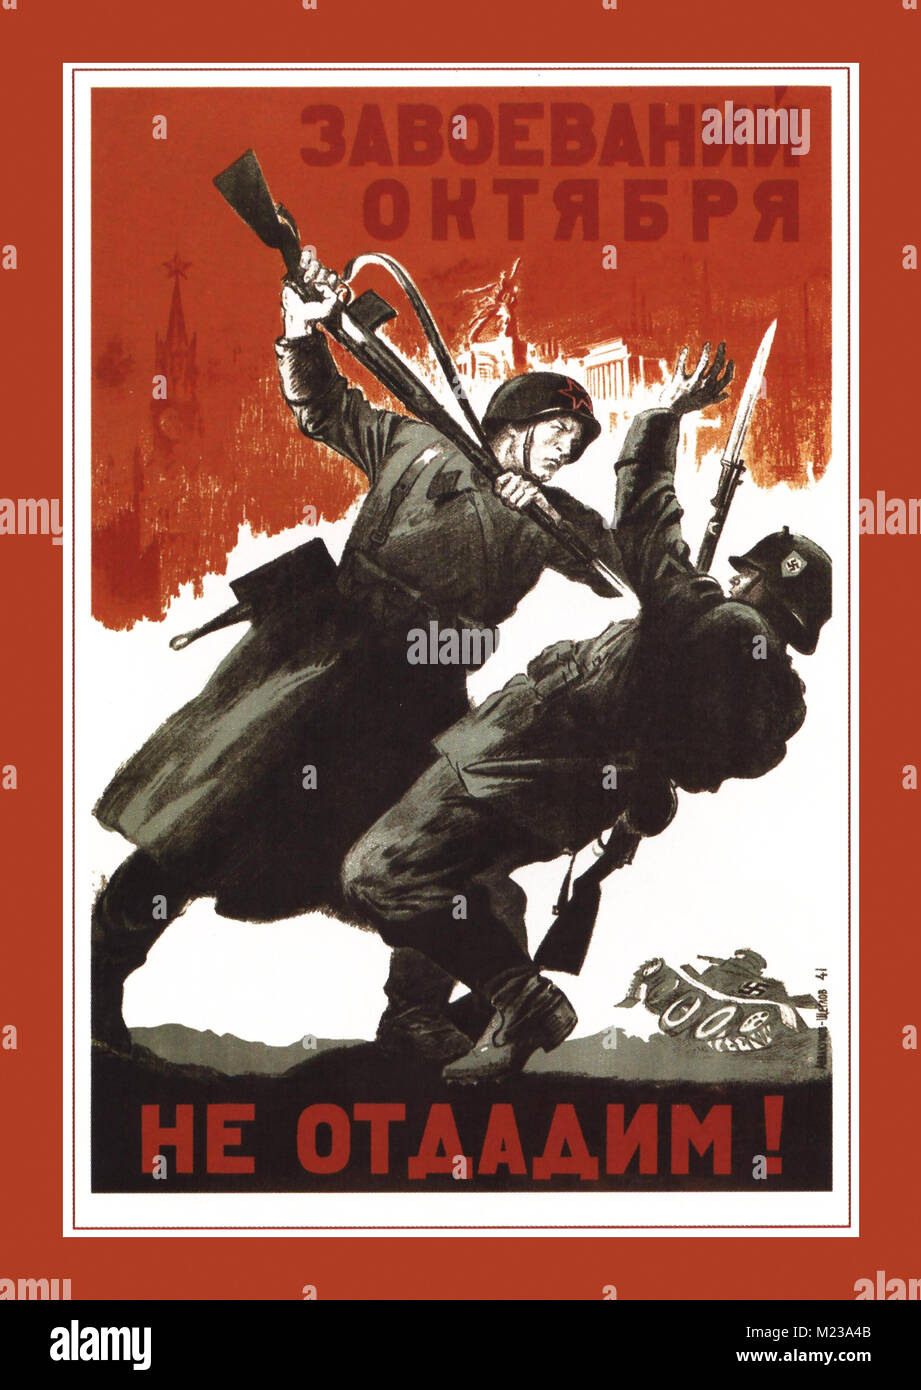 Vintage affiche de recrutement pour la propagande russe WW2. 'Être là." a produit en 1941, illustrant un soldat soviétique en écrasant un soldat allemand à baïonnette Banque D'Images